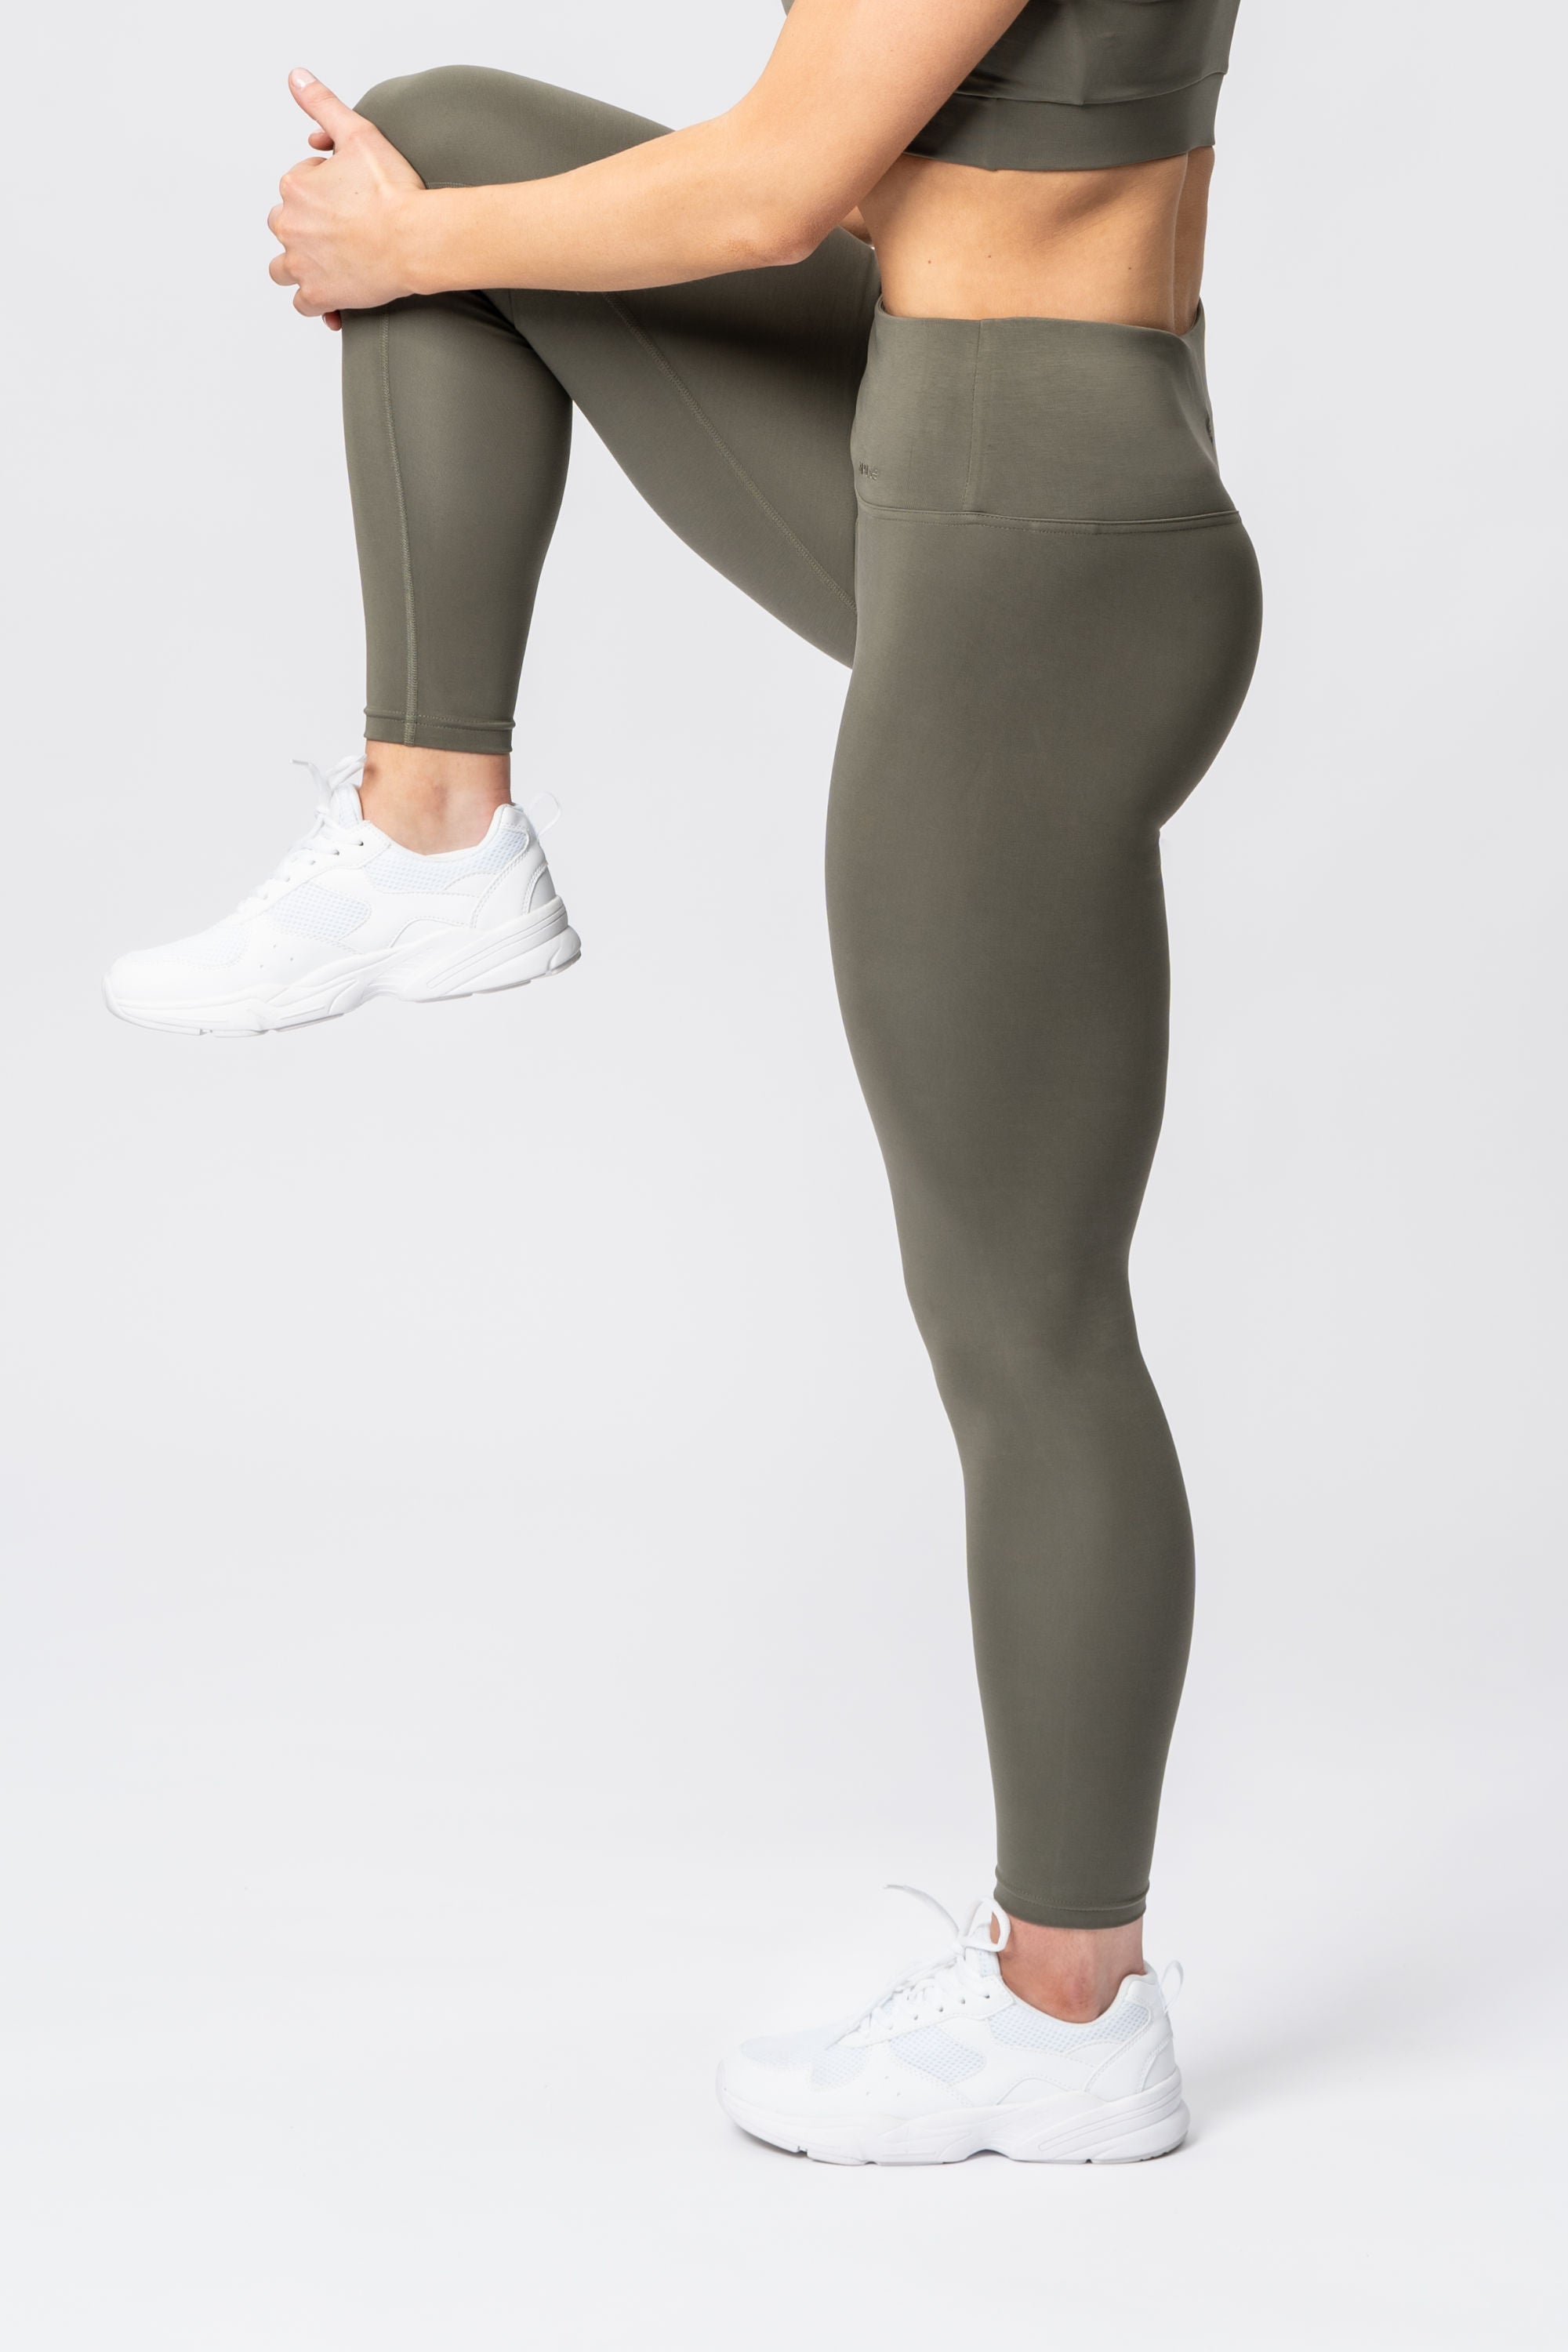 EUC Women's Champion dark green exercise full length leggings - size XXL